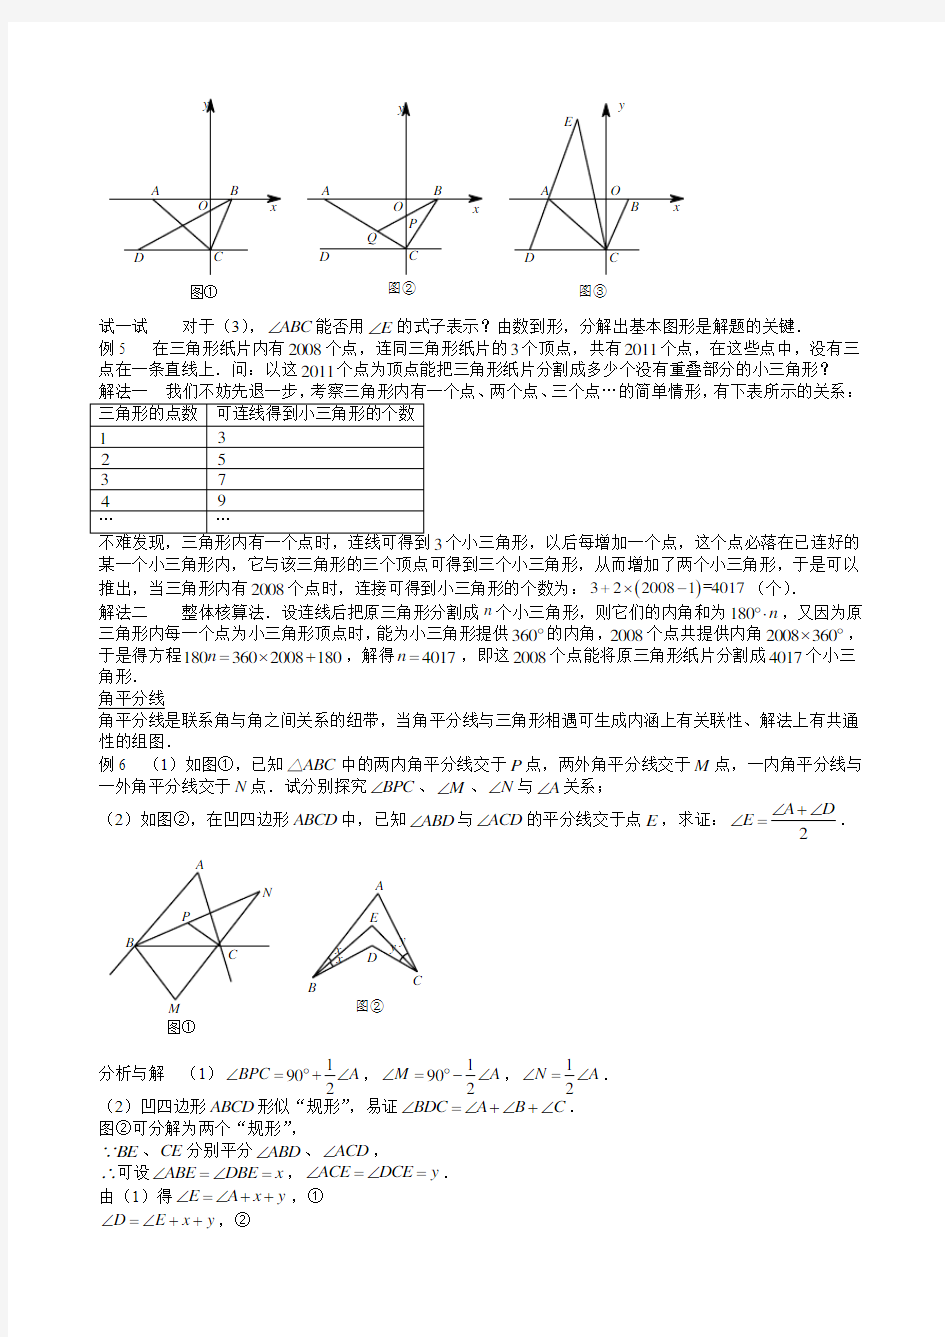 七年级数学思维探究(24)认识三角形(含答案)